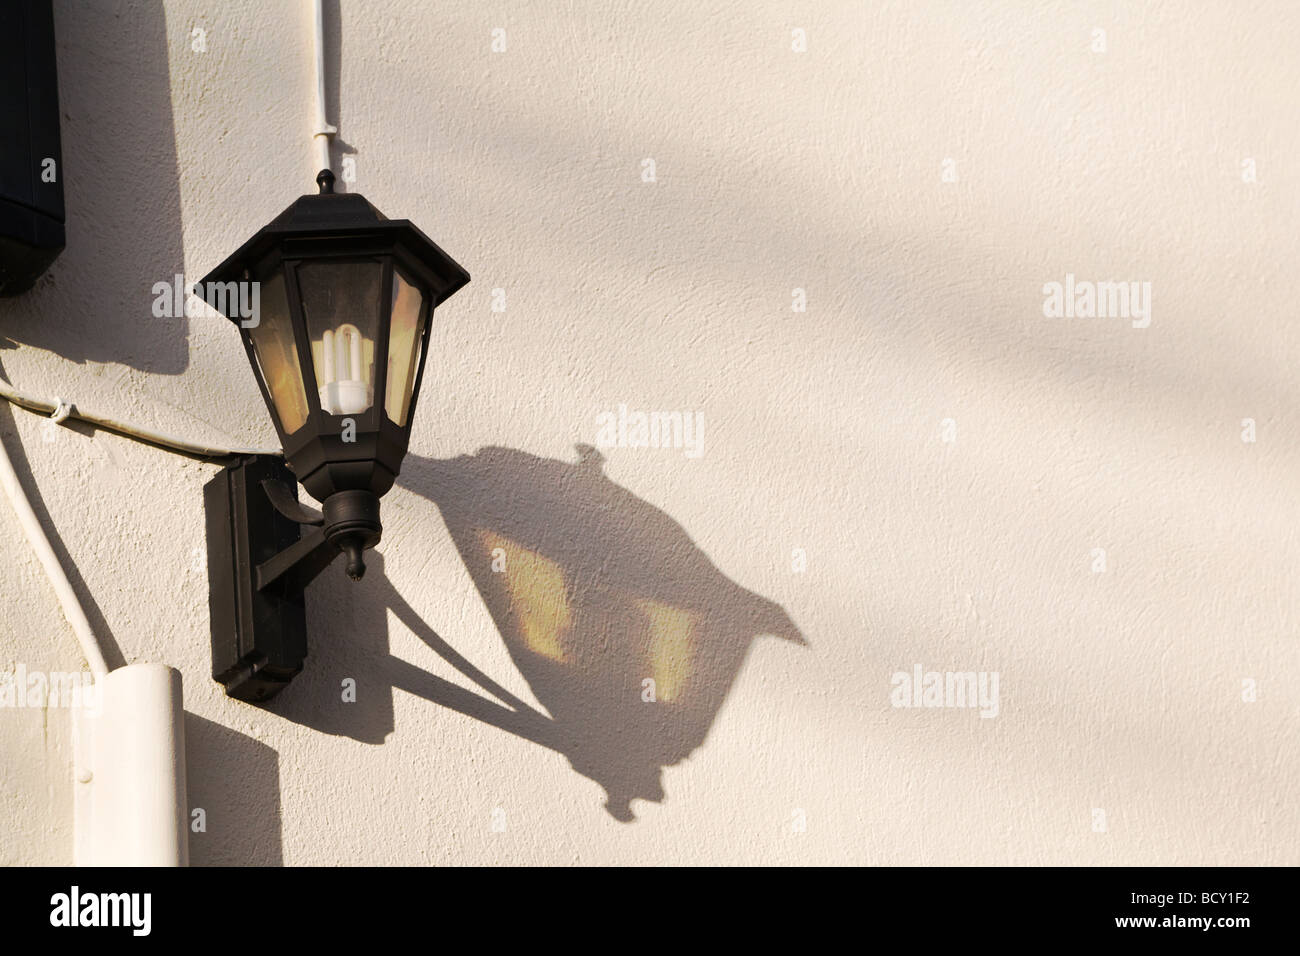 Un style traditionnel fixée au mur extérieur de longue durée, avec l'ampoule basse consommation, jette une ombre sur le mur. UK. Banque D'Images